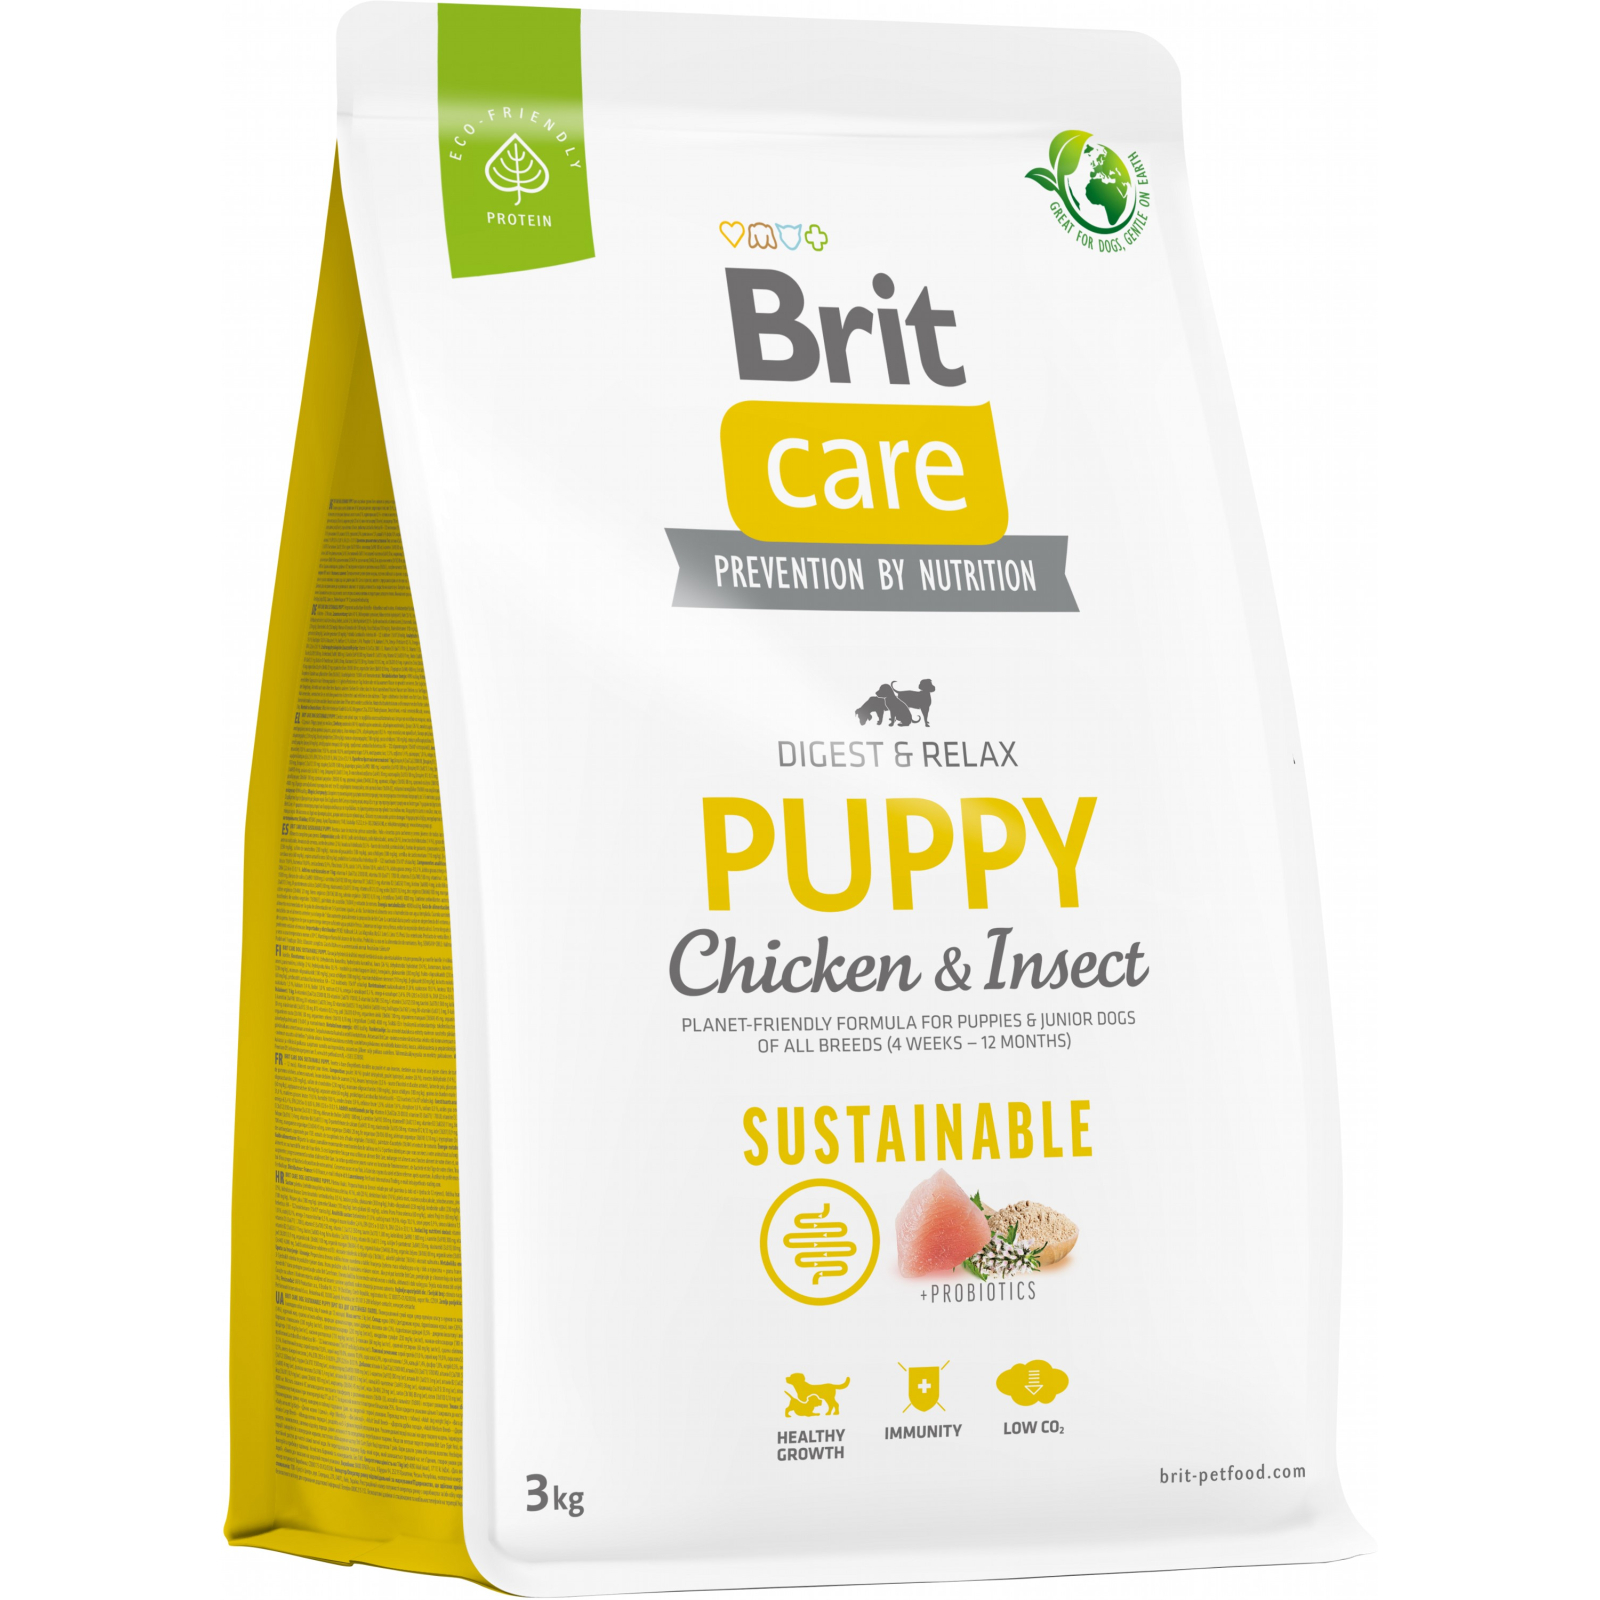 Сухой корм для собак Brit Care Dog Sustainable Puppy с курицей и насекомыми 12 кг (8595602558629)